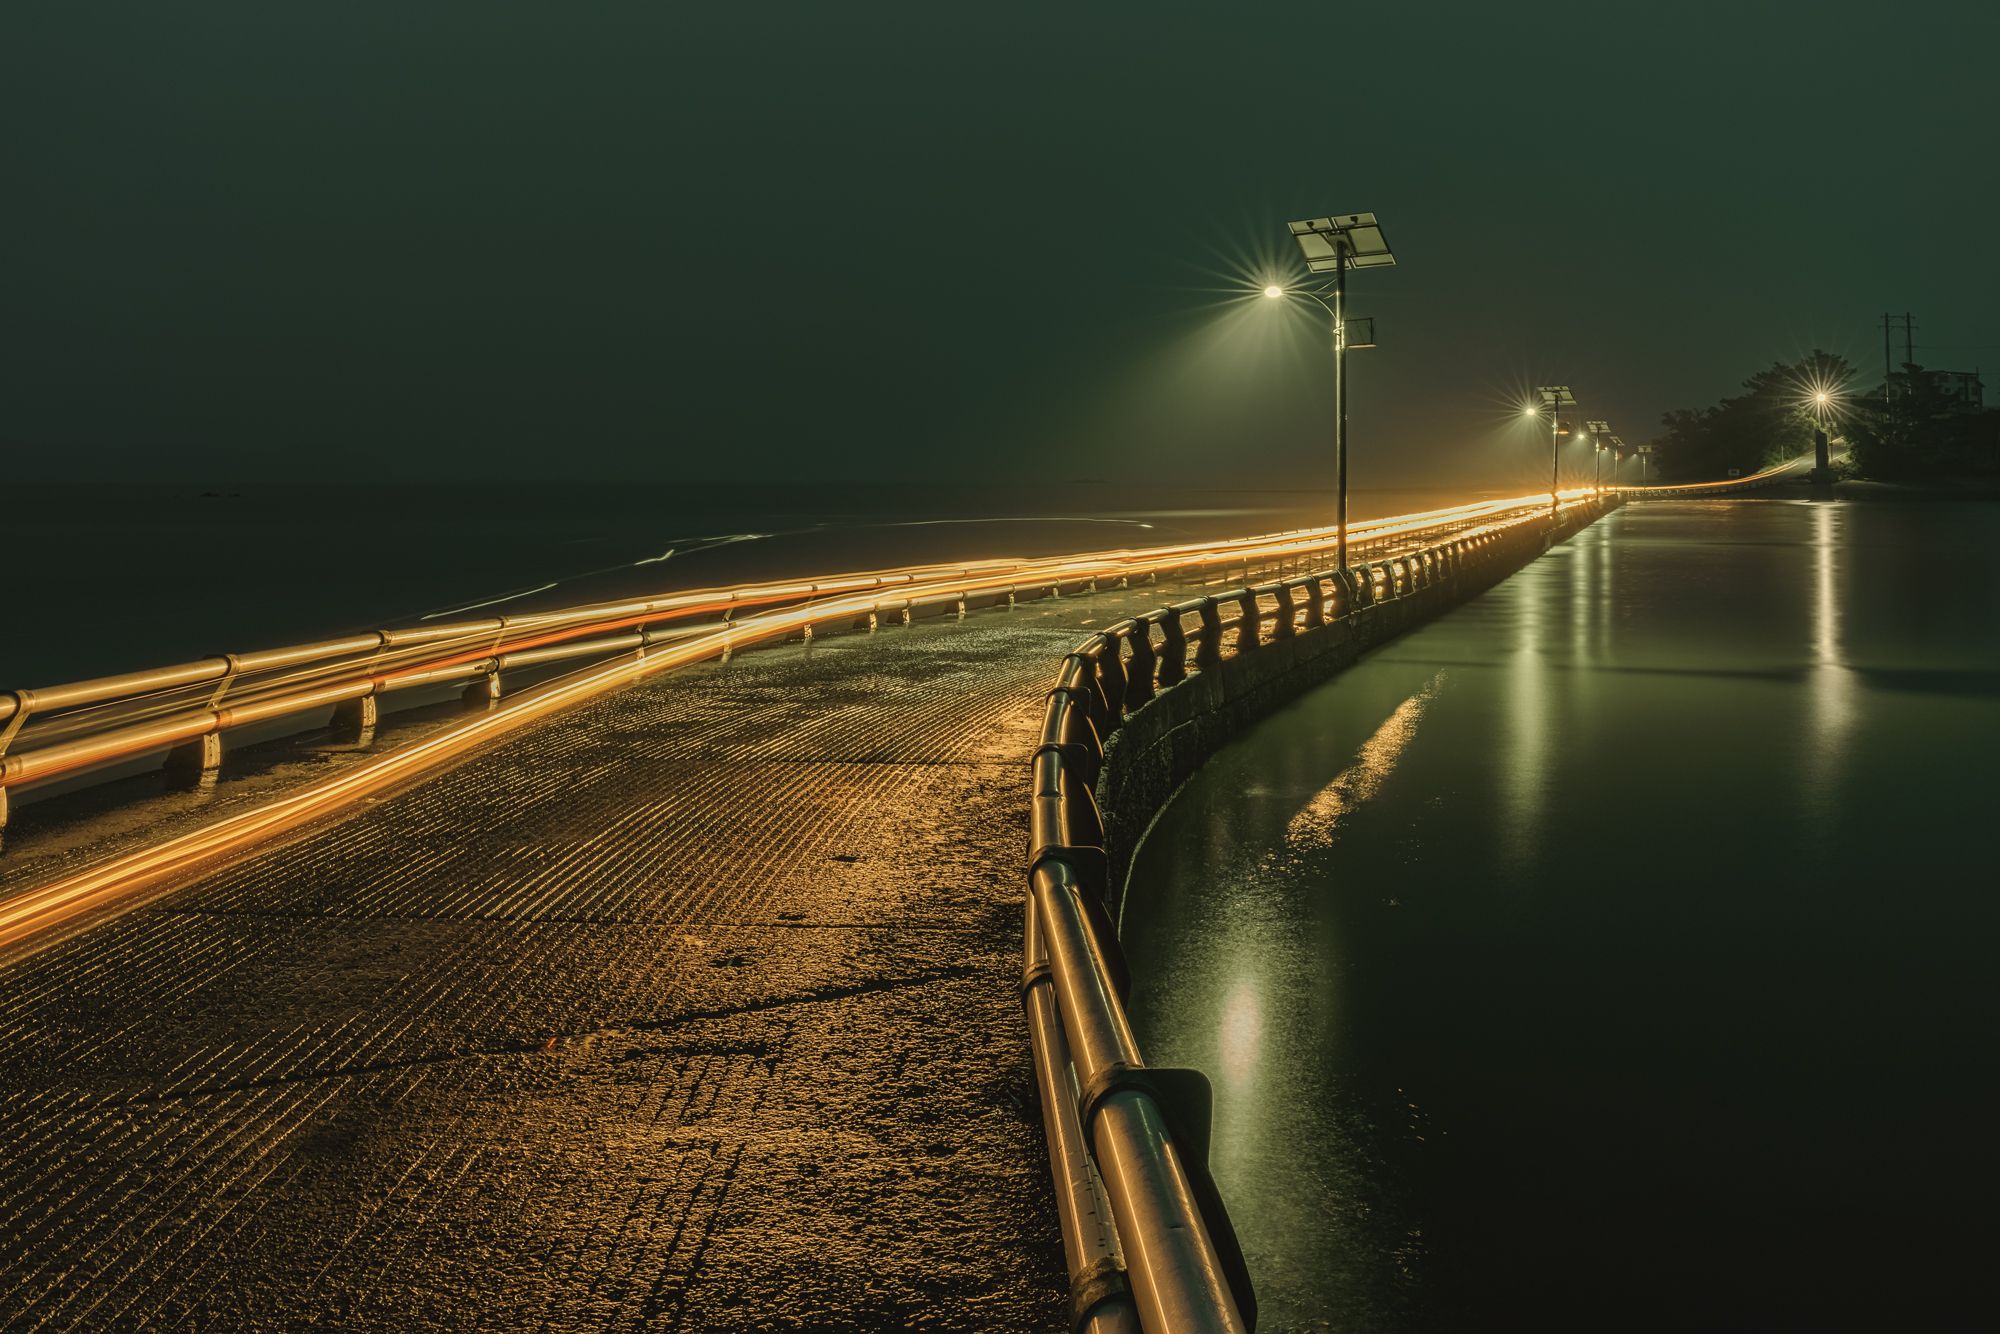 Bridge, night scape, Yongseok Chun